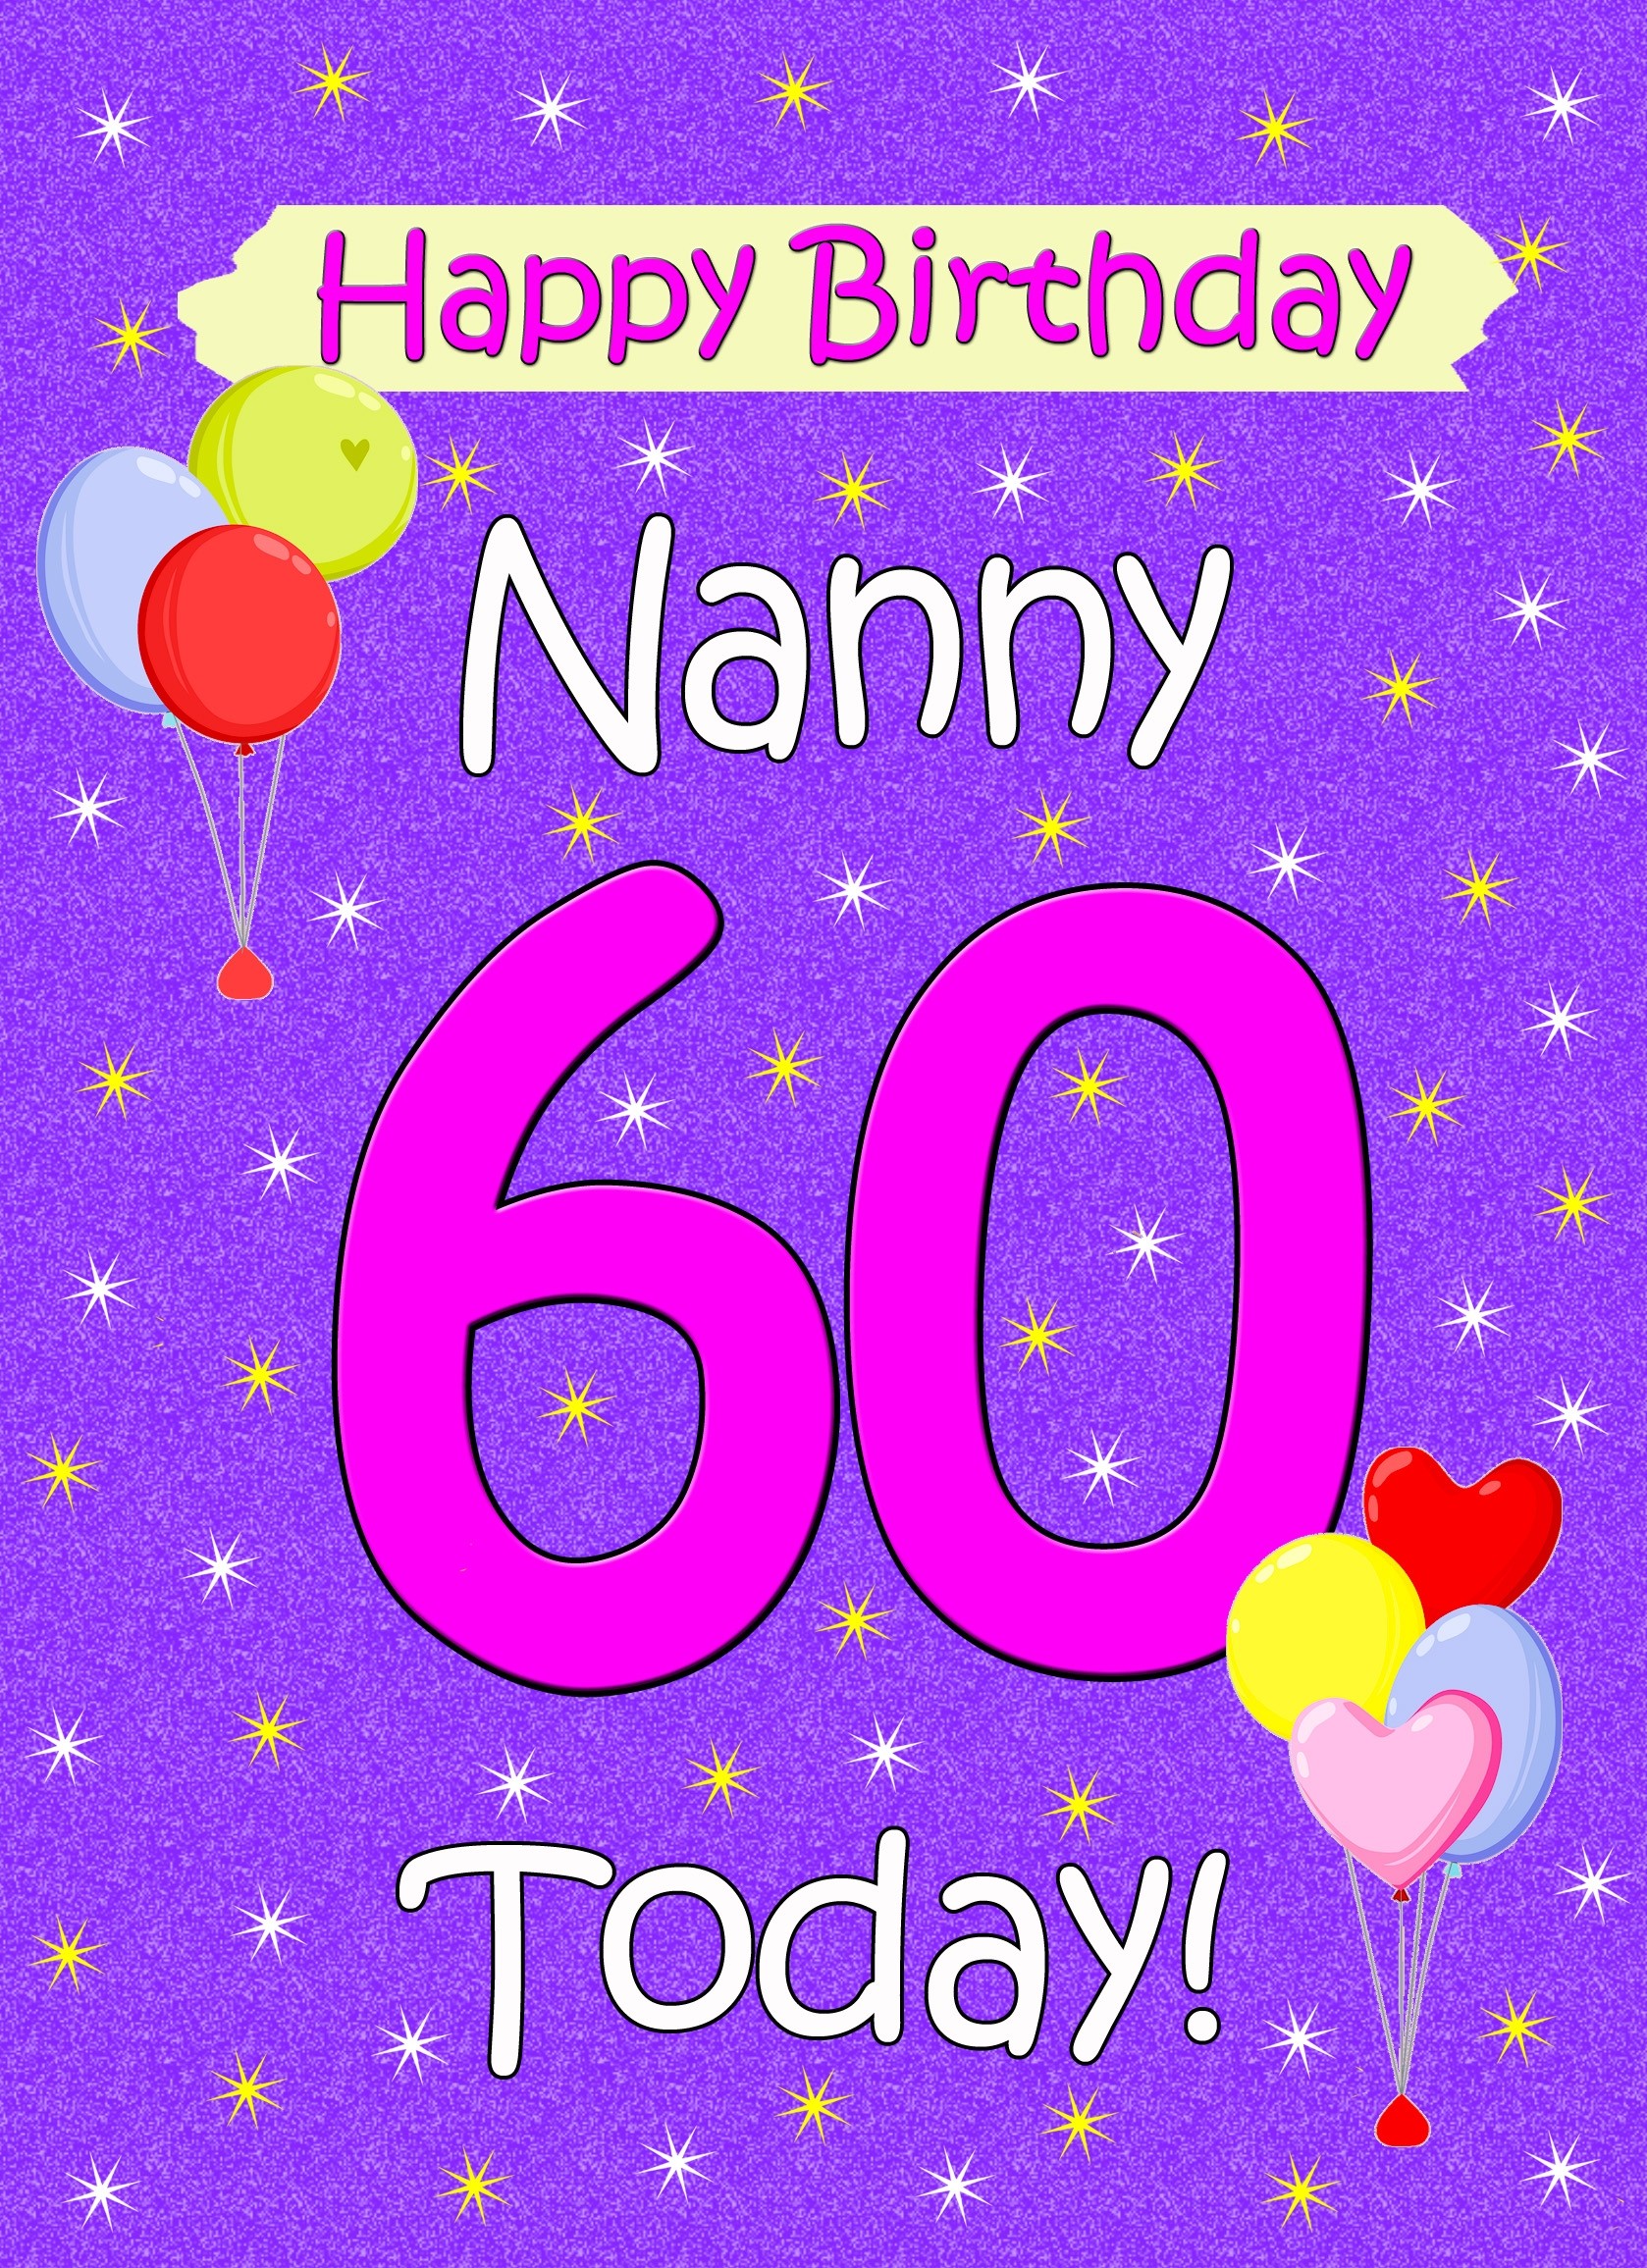 Nanny 60th Birthday Card (Lilac)